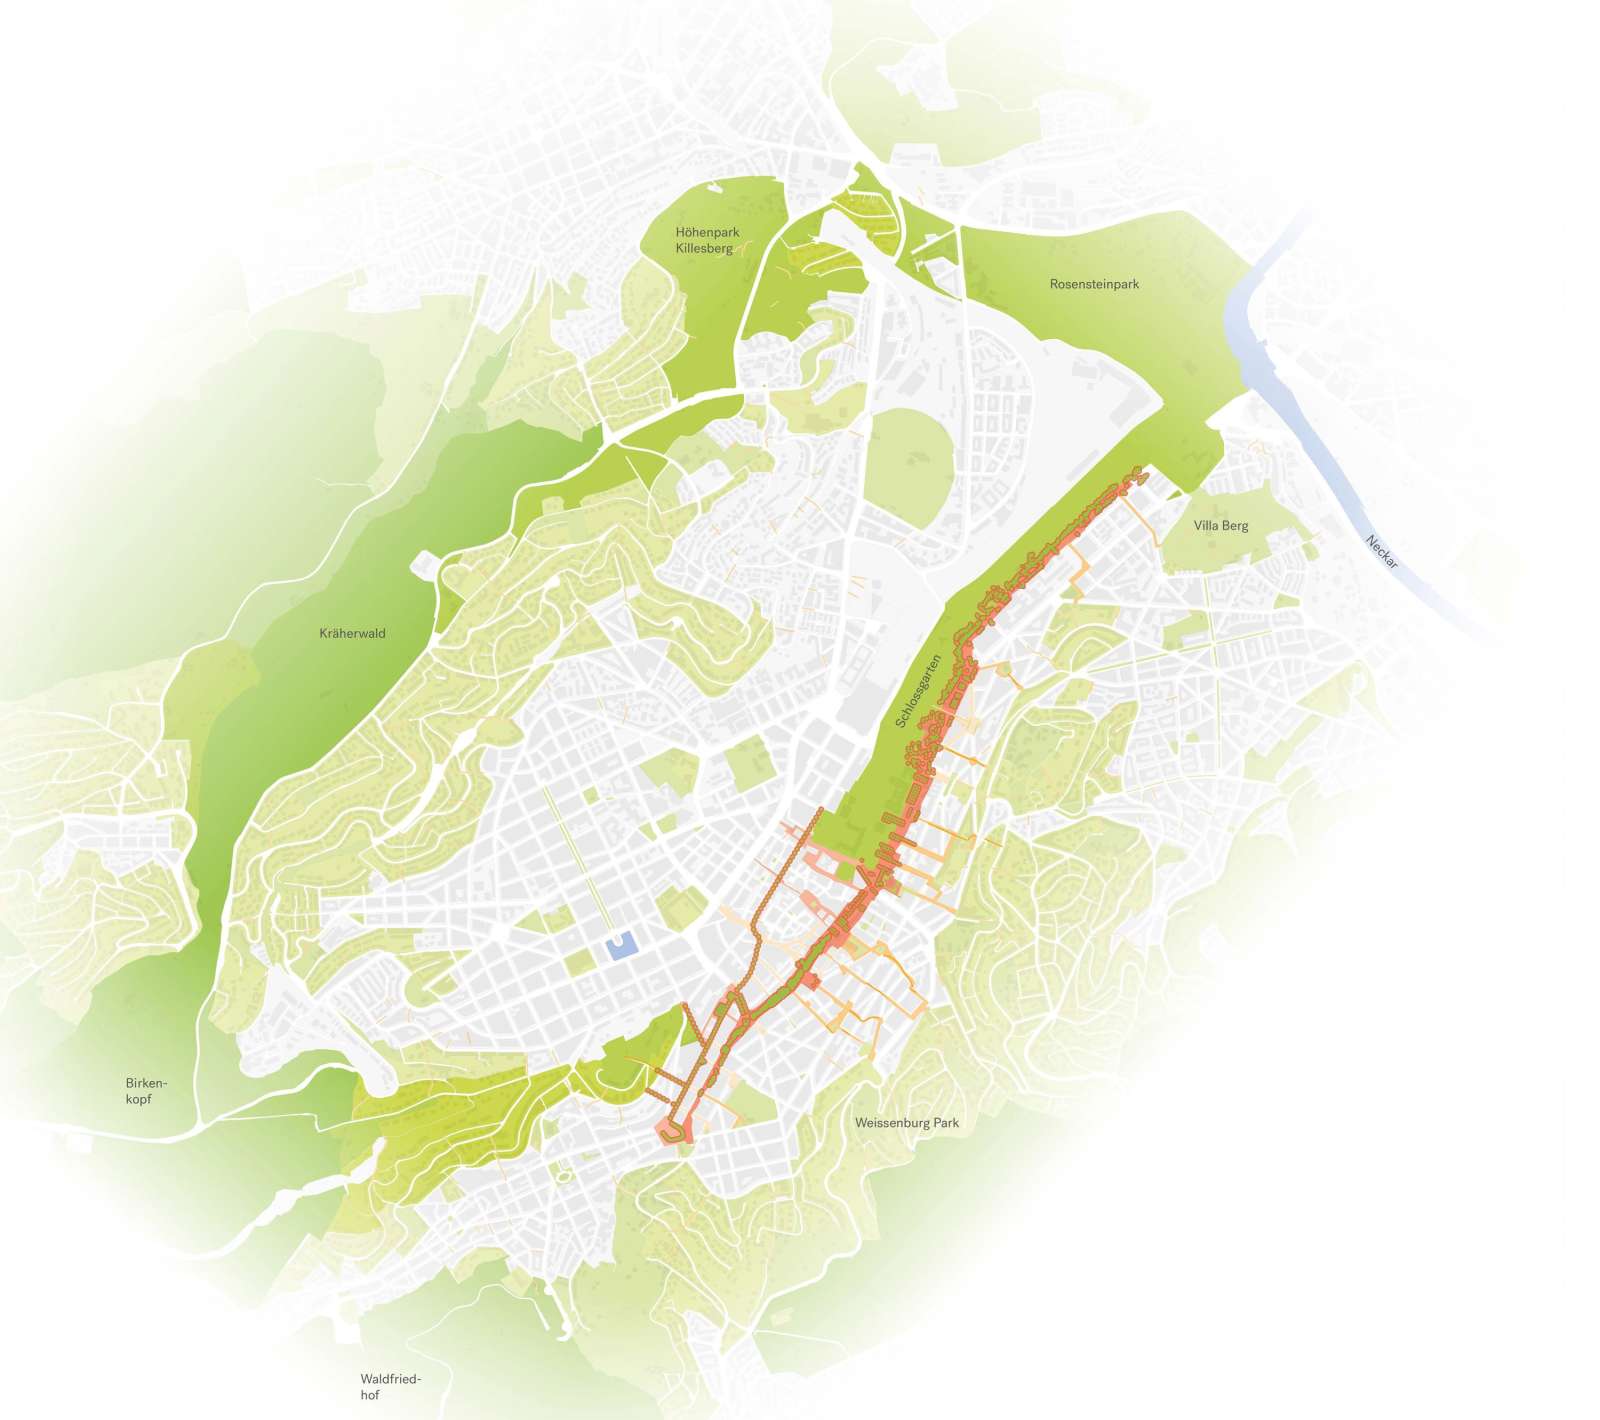 Die neue grüne Fuge schließt das ›Grüne U‹ zwischen Karlshöhe, Schloßgarten zu einem ›Grünen O‹.